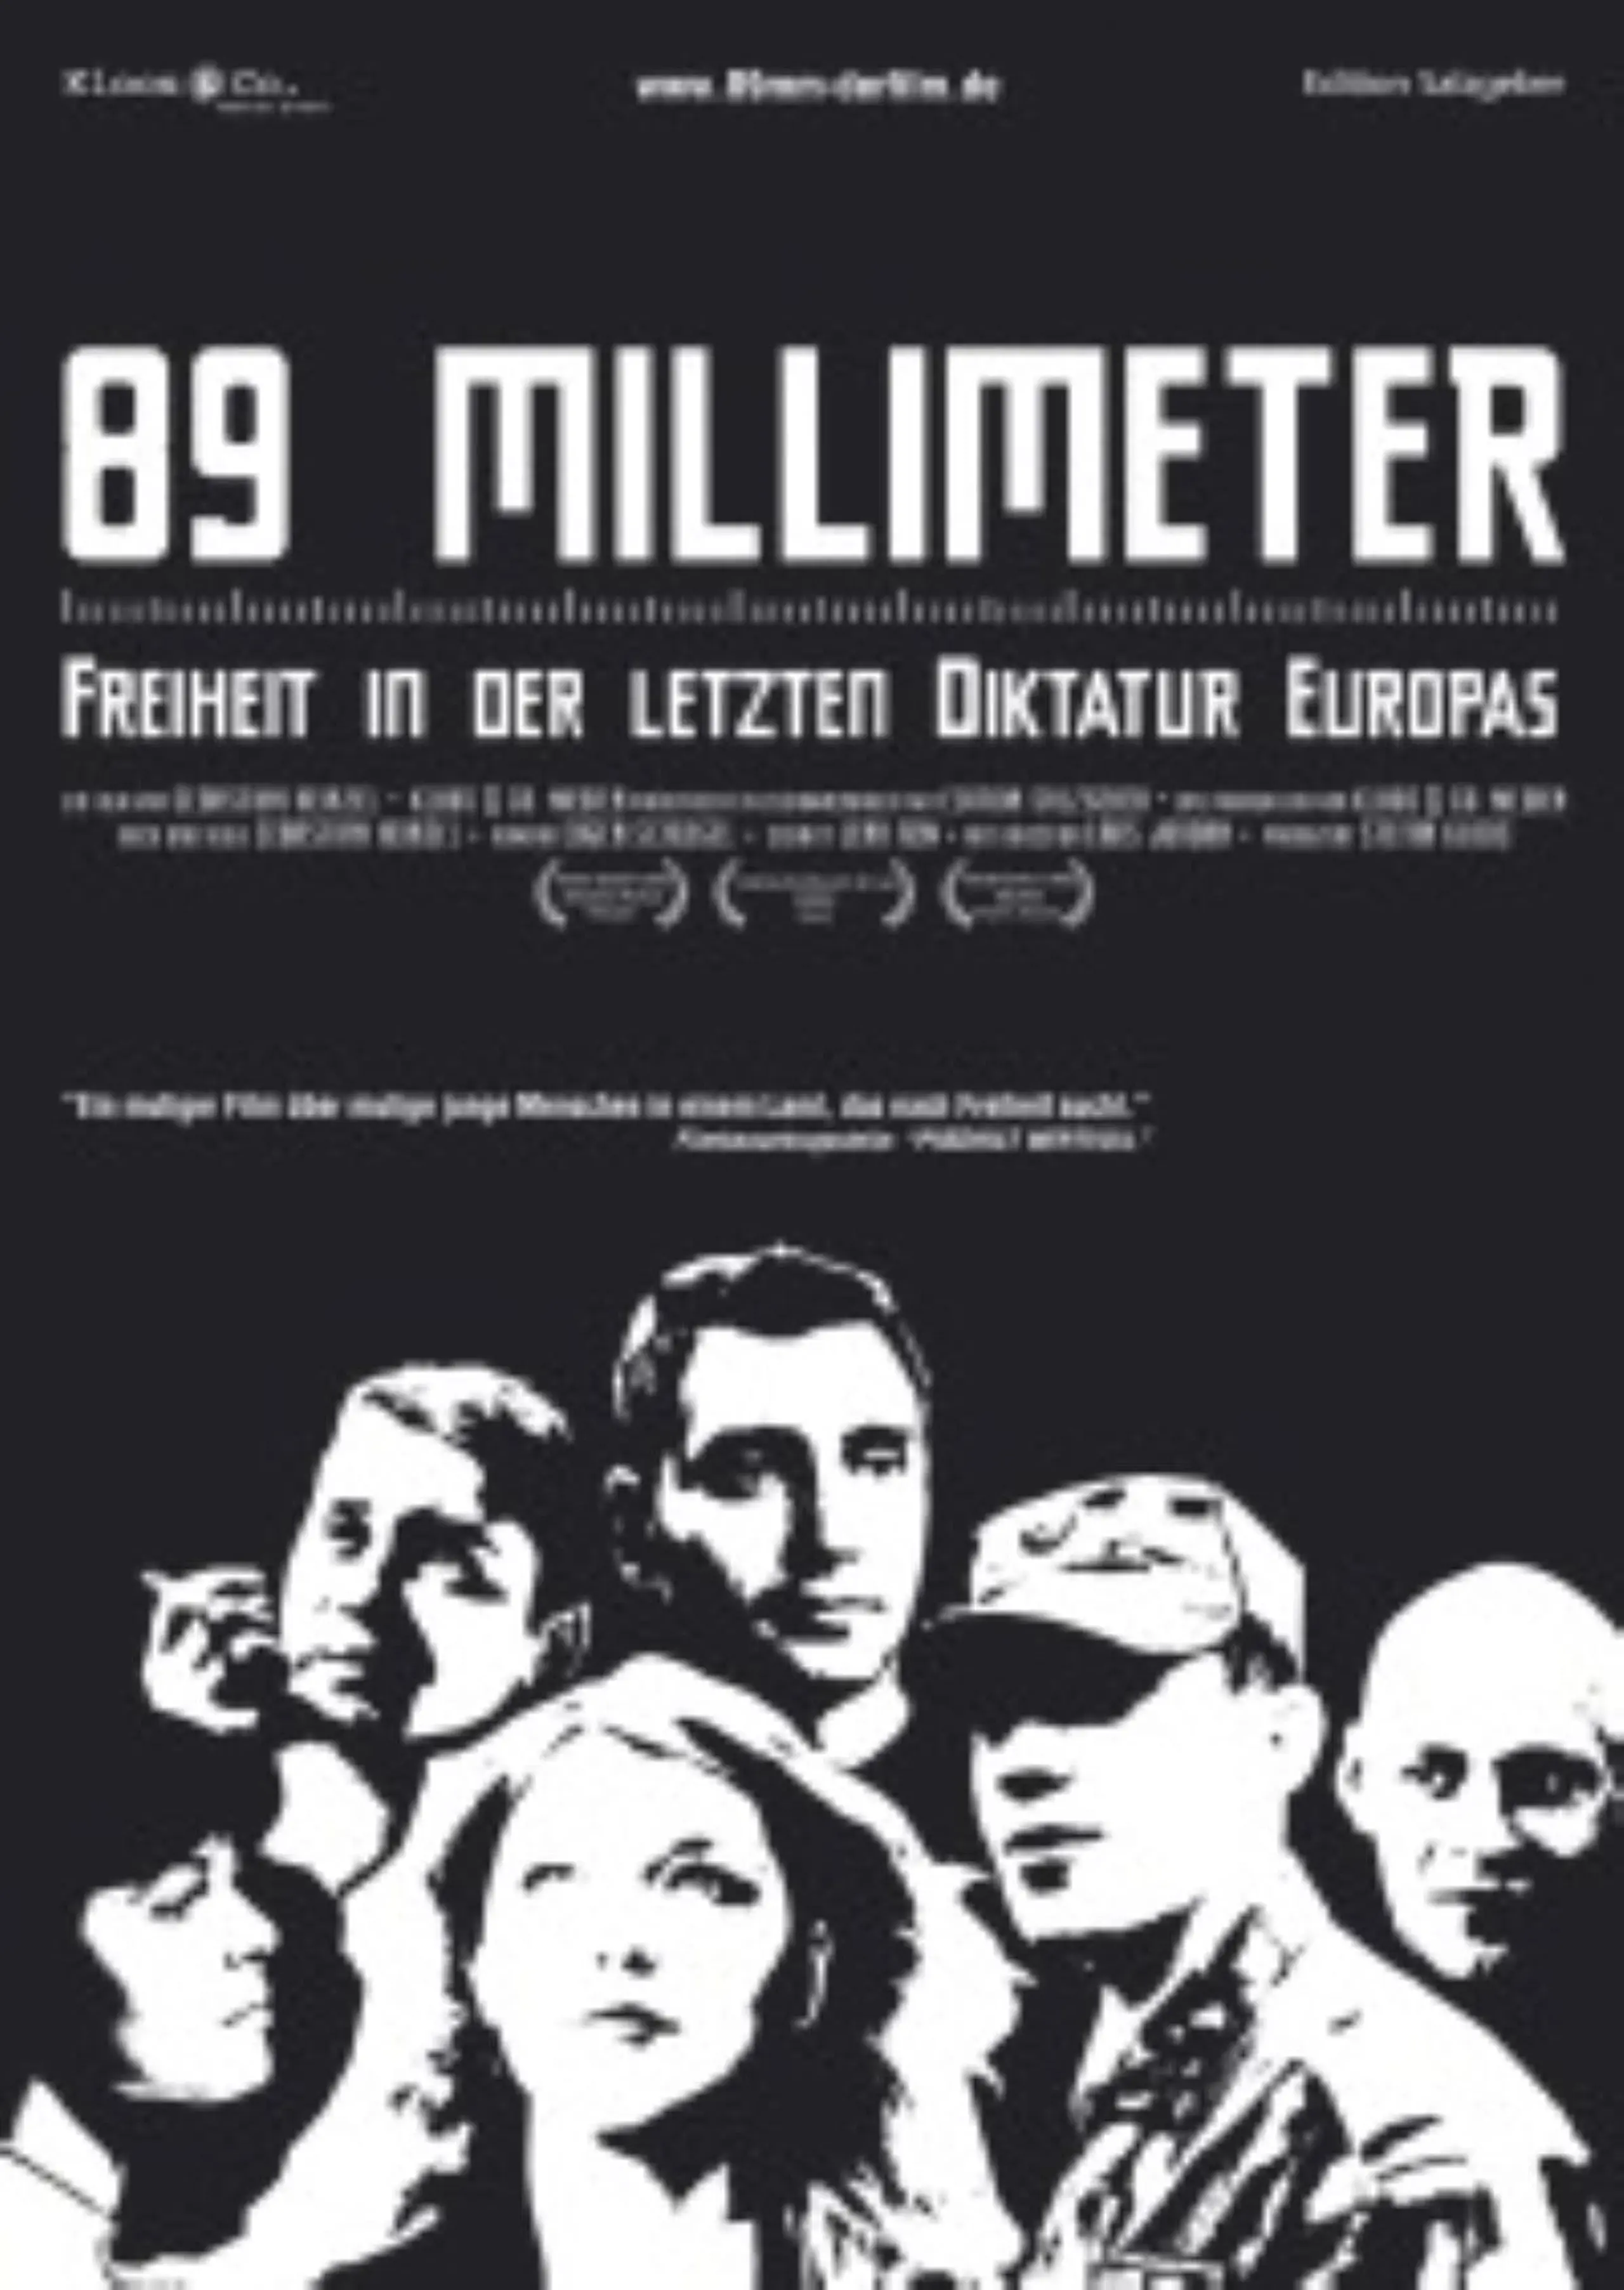 89 mm - Freiheit in der Letzten Diktatur Europas